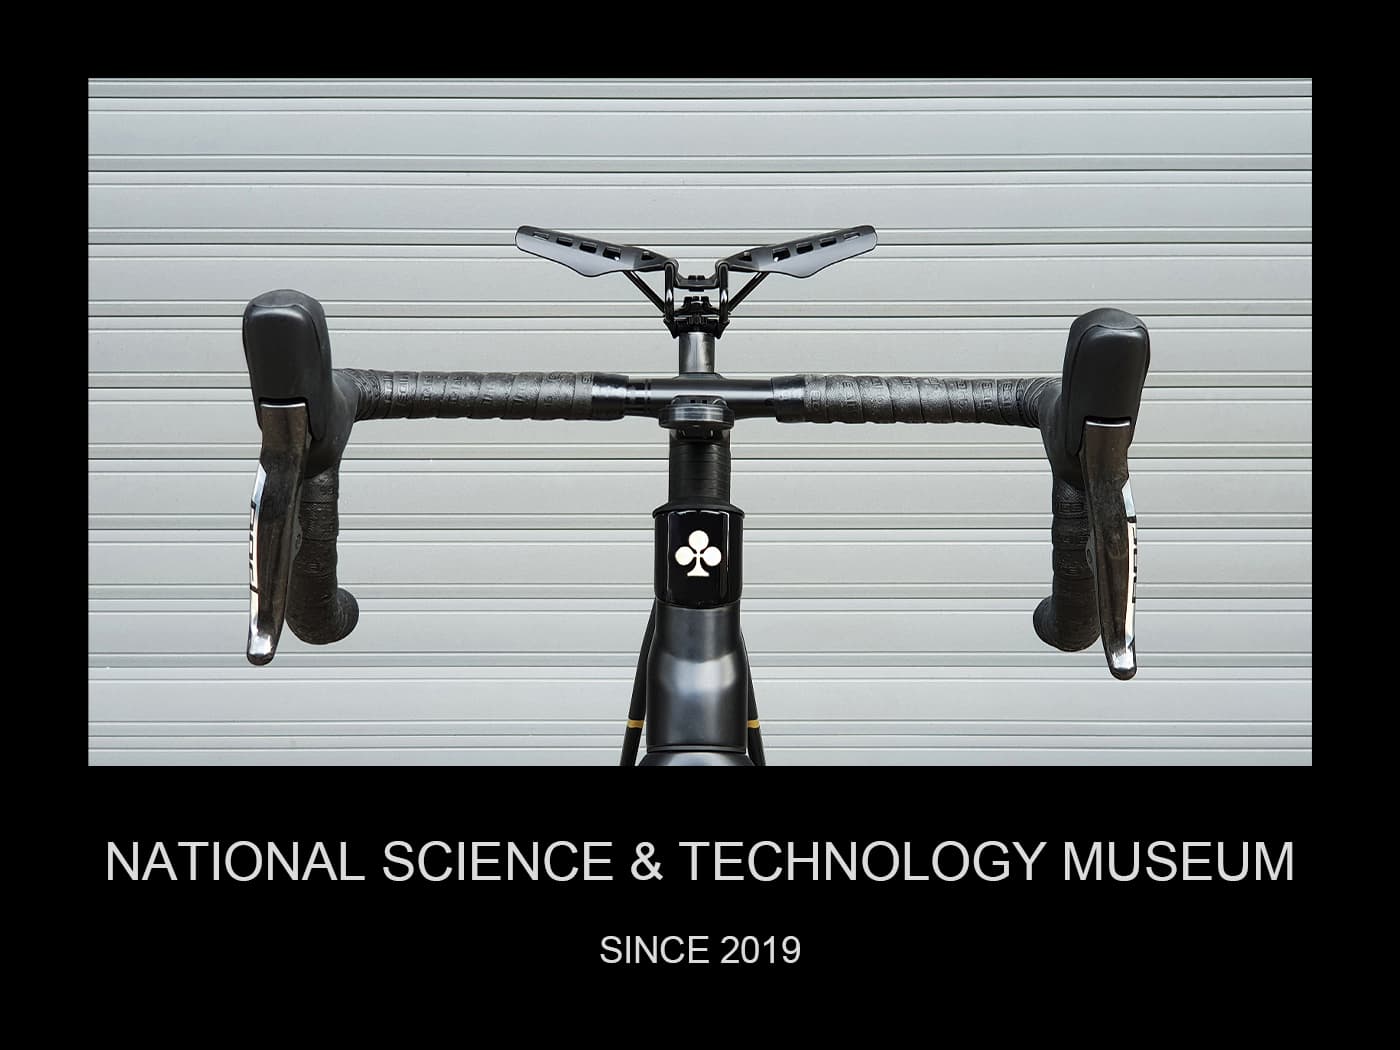 鷗翼坐墊於2019月正式陳列於國立科學工藝博物館